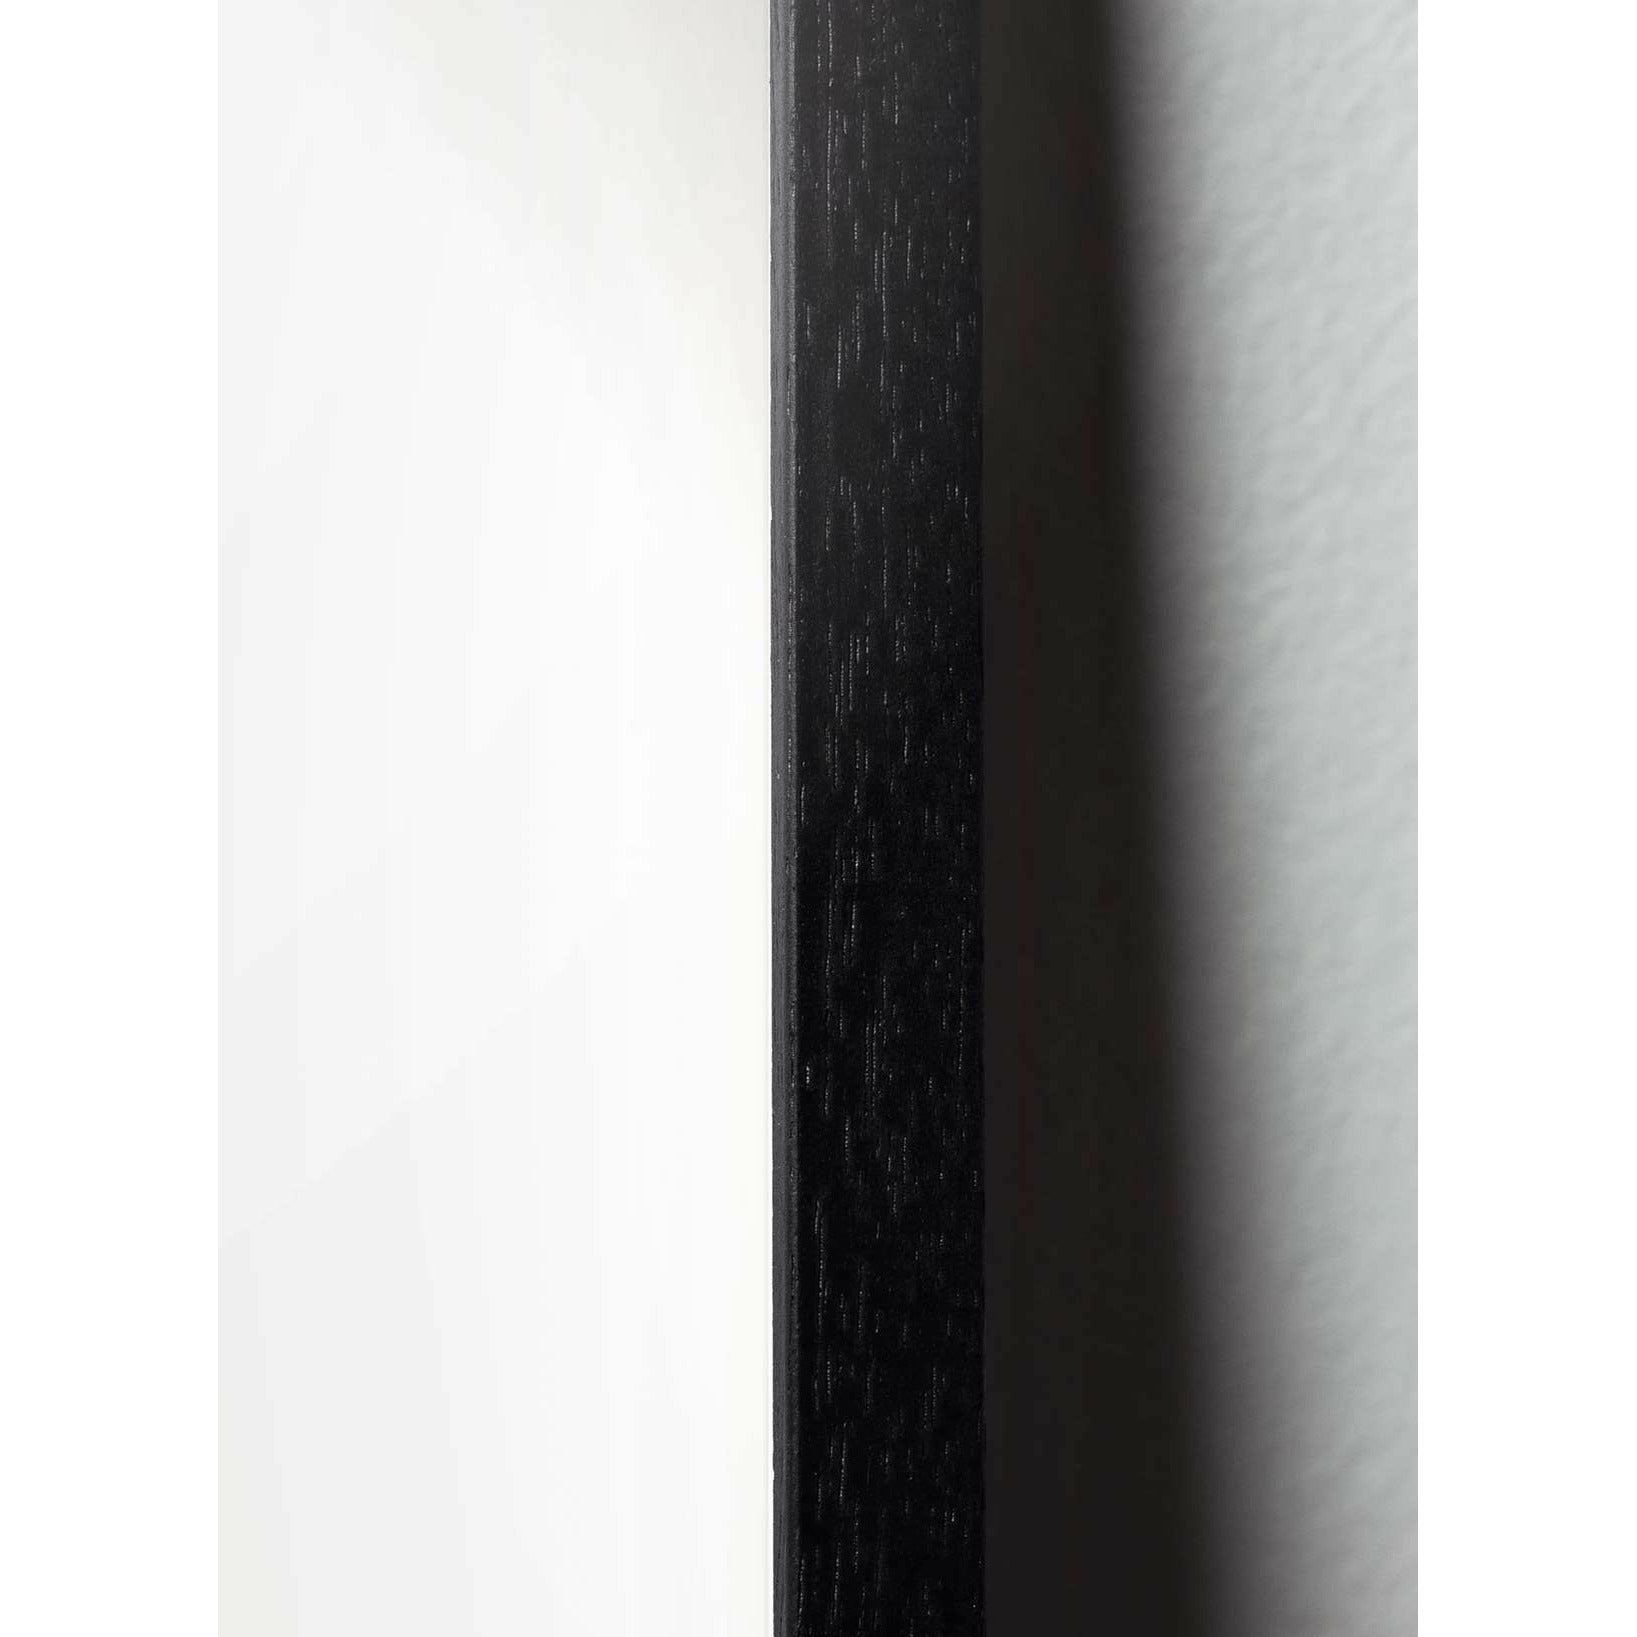 Brainchild Myrdesignikonsaffisch, ram gjord av svart lackerat trä 50 x70 cm, grå